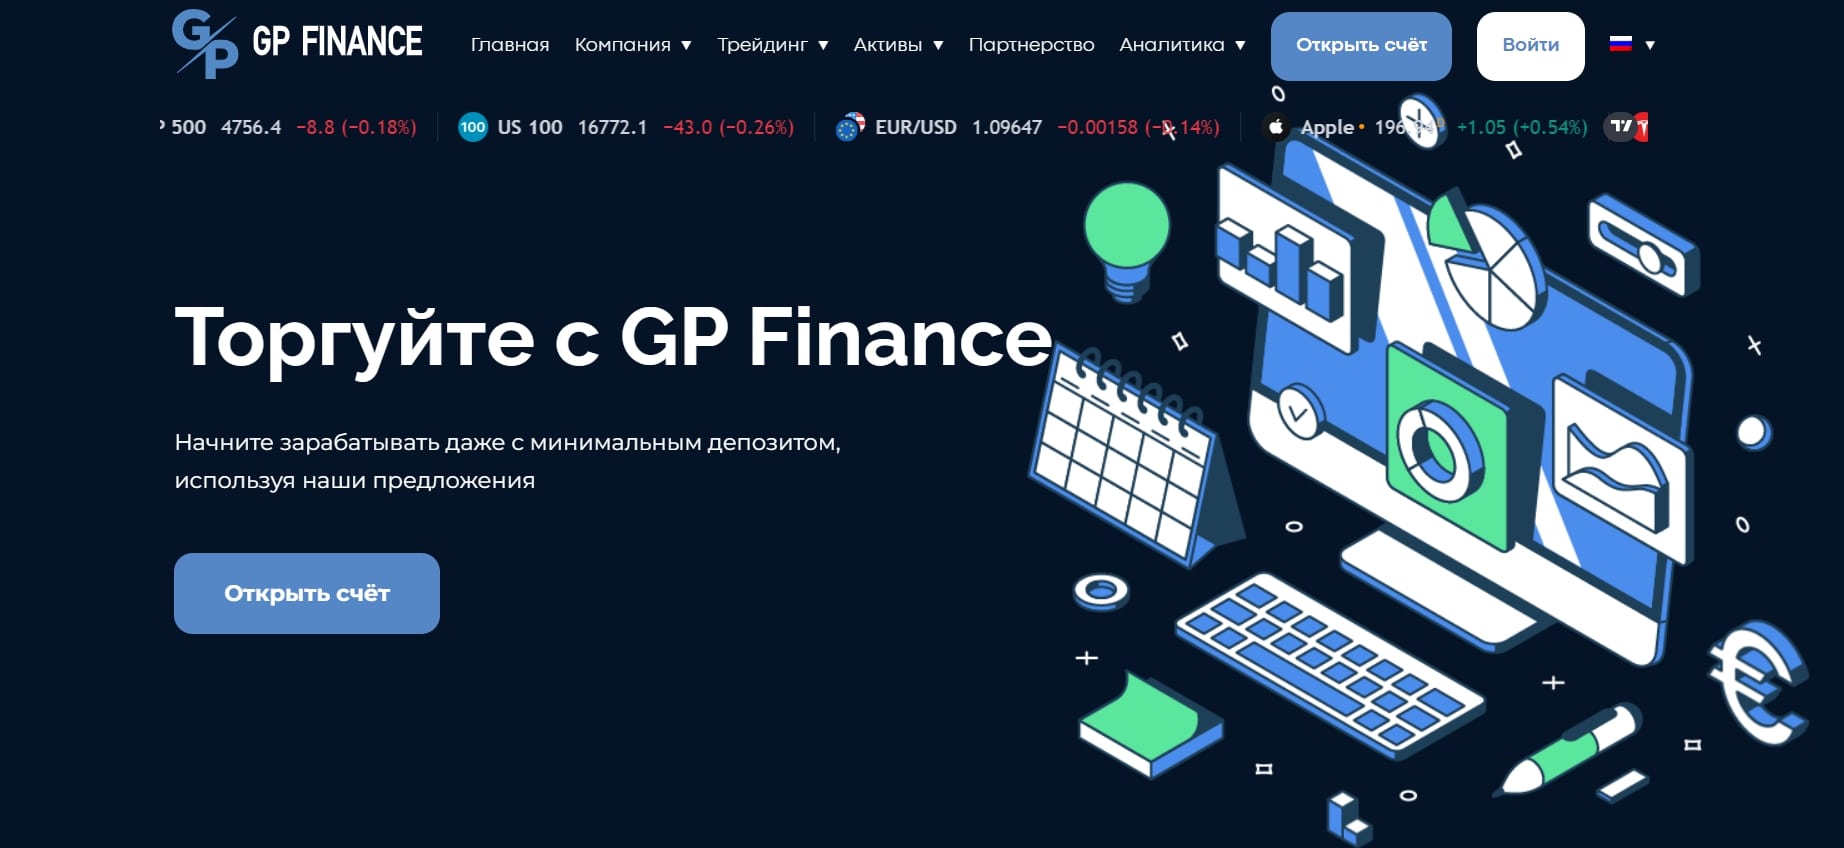 GP Finance инфо